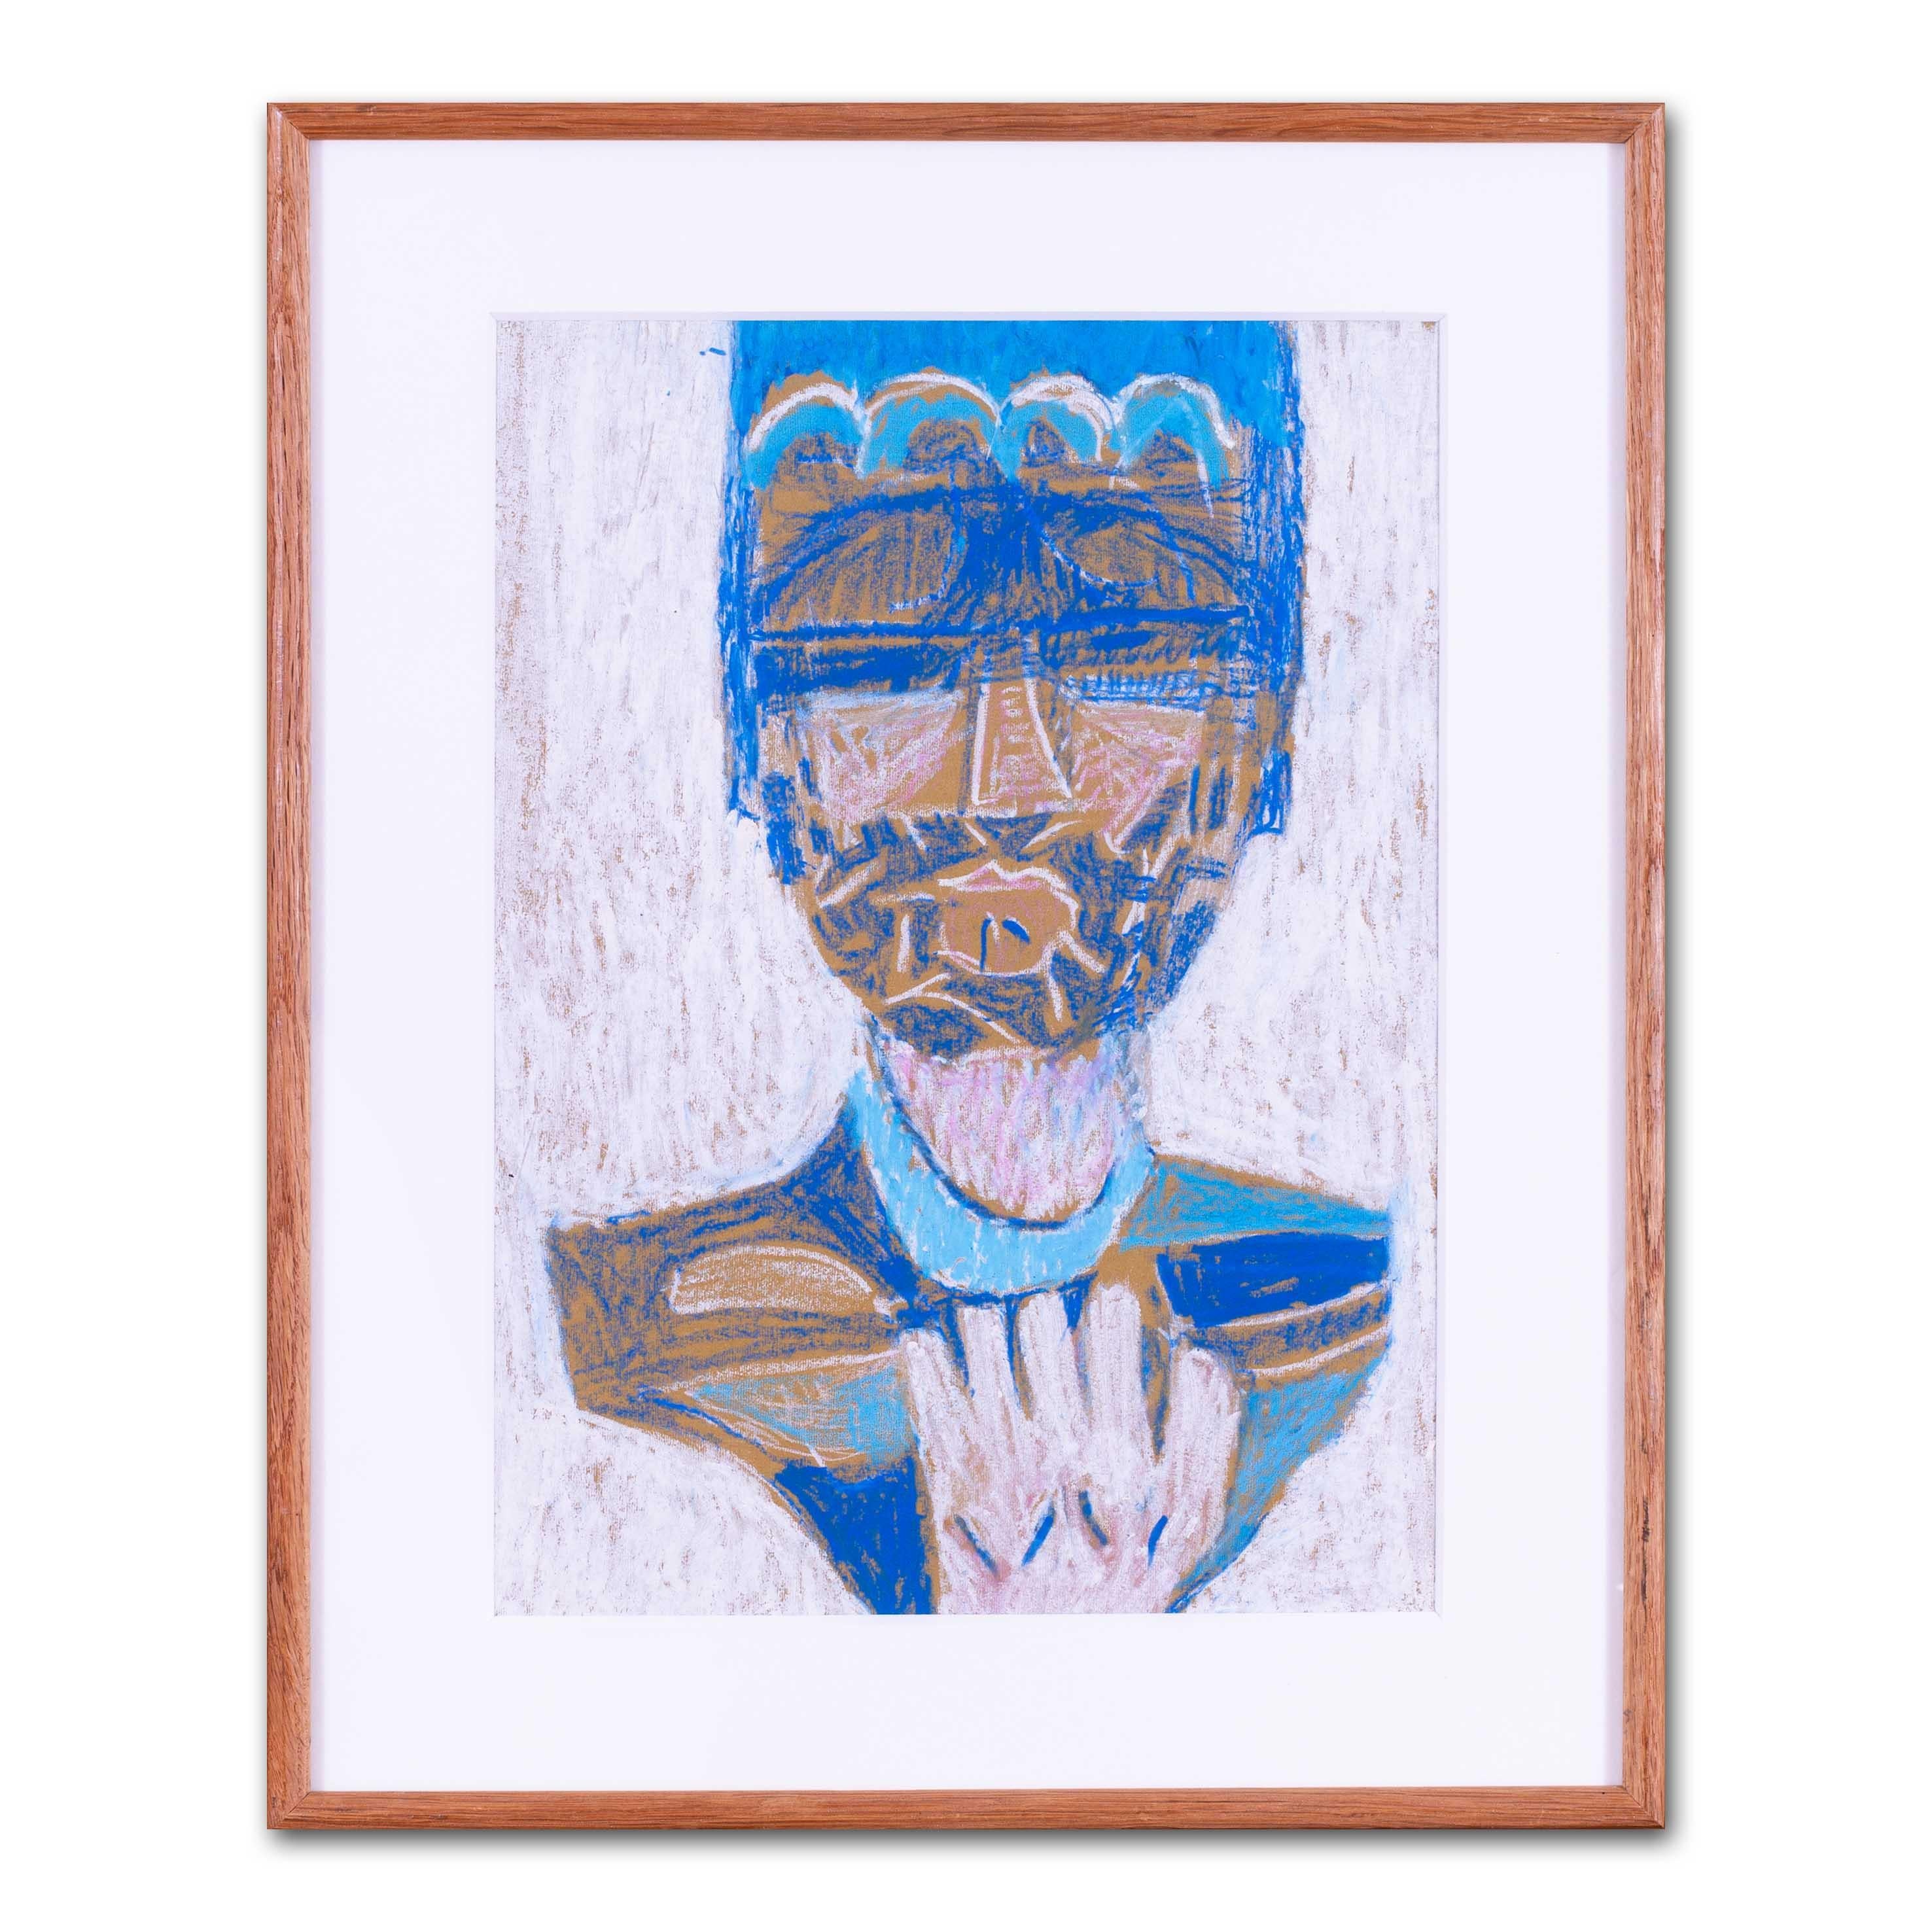 Ce portrait abstrait mythologique, "Blue Deity", utilise de riches nuances de bleu pour contraster avec le pastel blanc sur le papier. Le personnage porte une coiffe élaborée et exotique, accentuée par des bleus vifs et perçants. Une main se tend